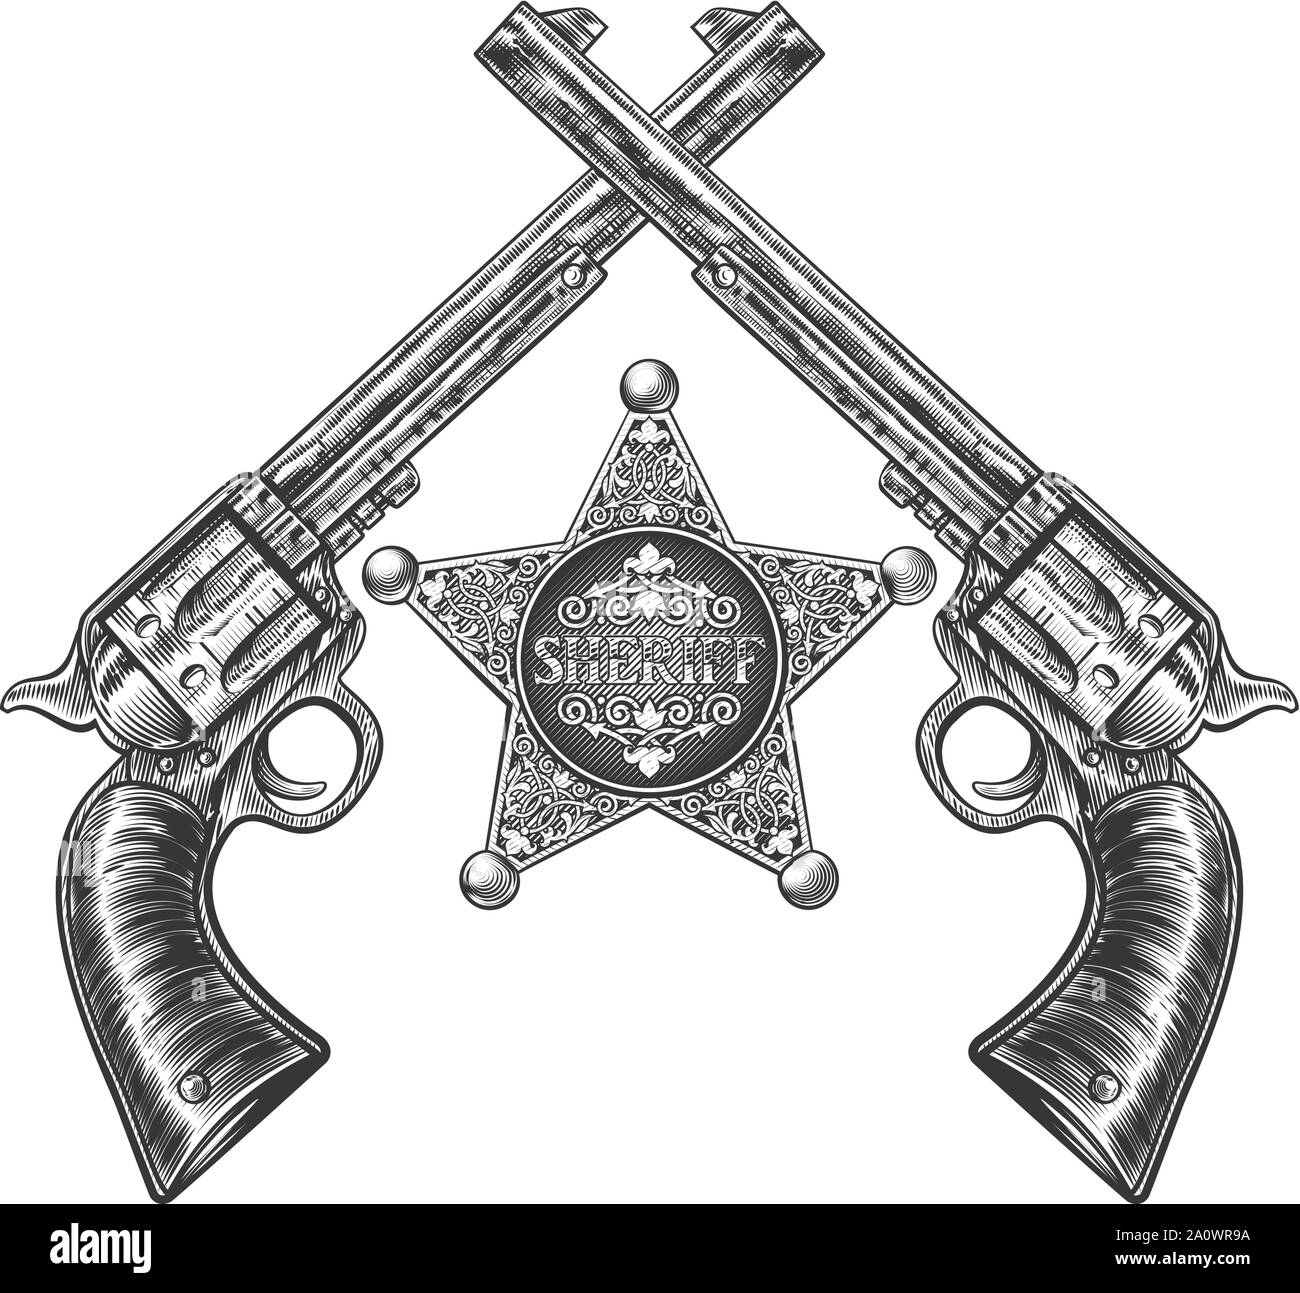 Pistolets croisés et Badge étoile shérif Illustration de Vecteur